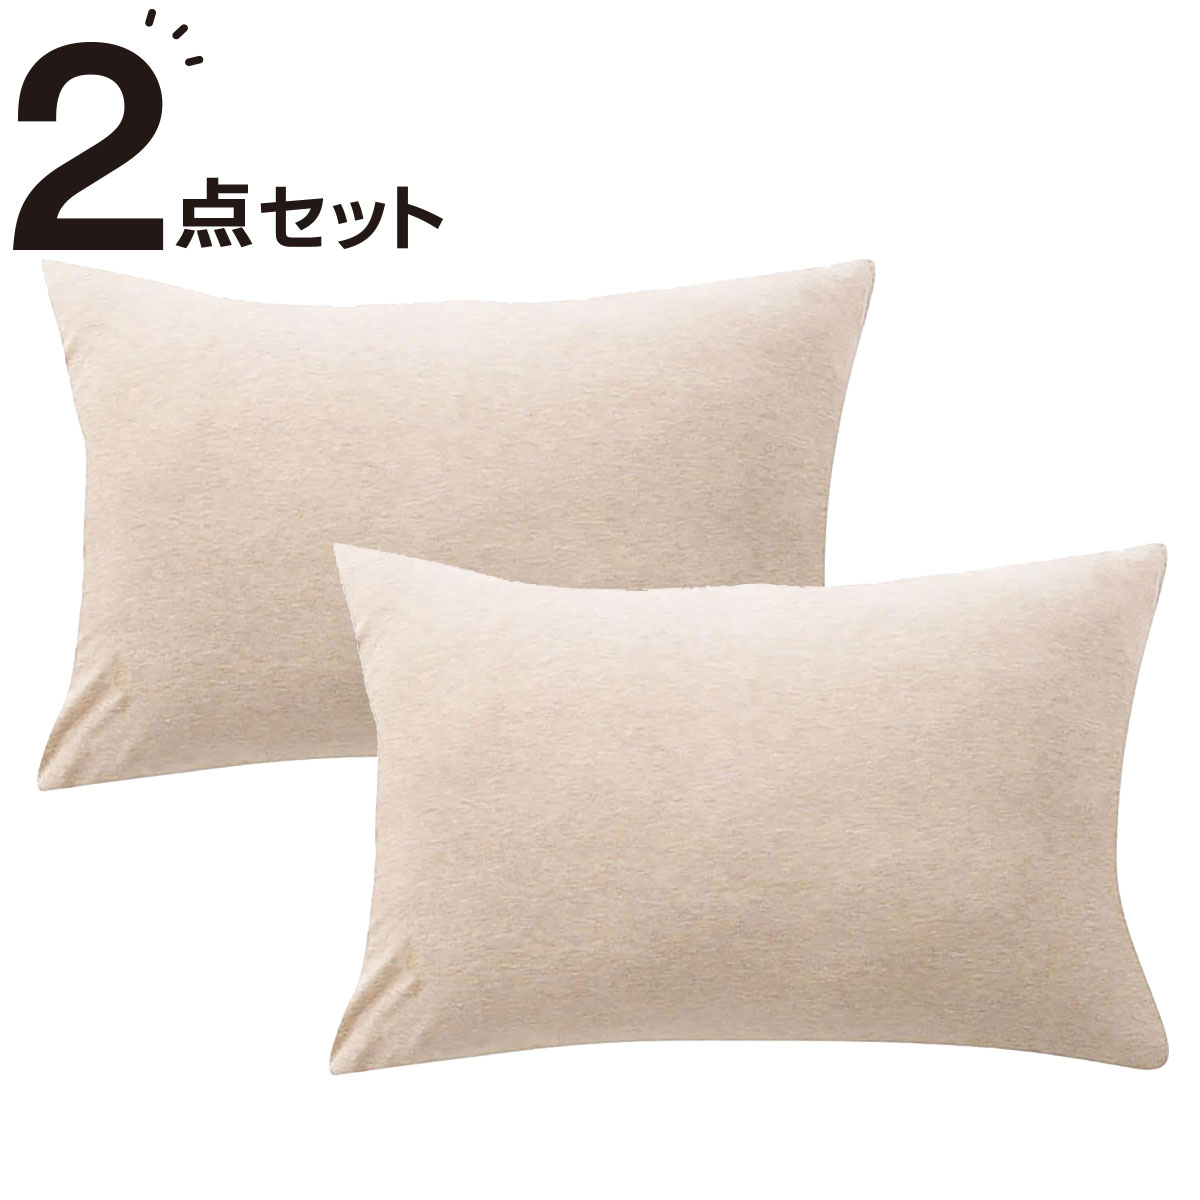 ニトリの枕カバー 2枚セット(Nニット4 BE)(布団・寝具)